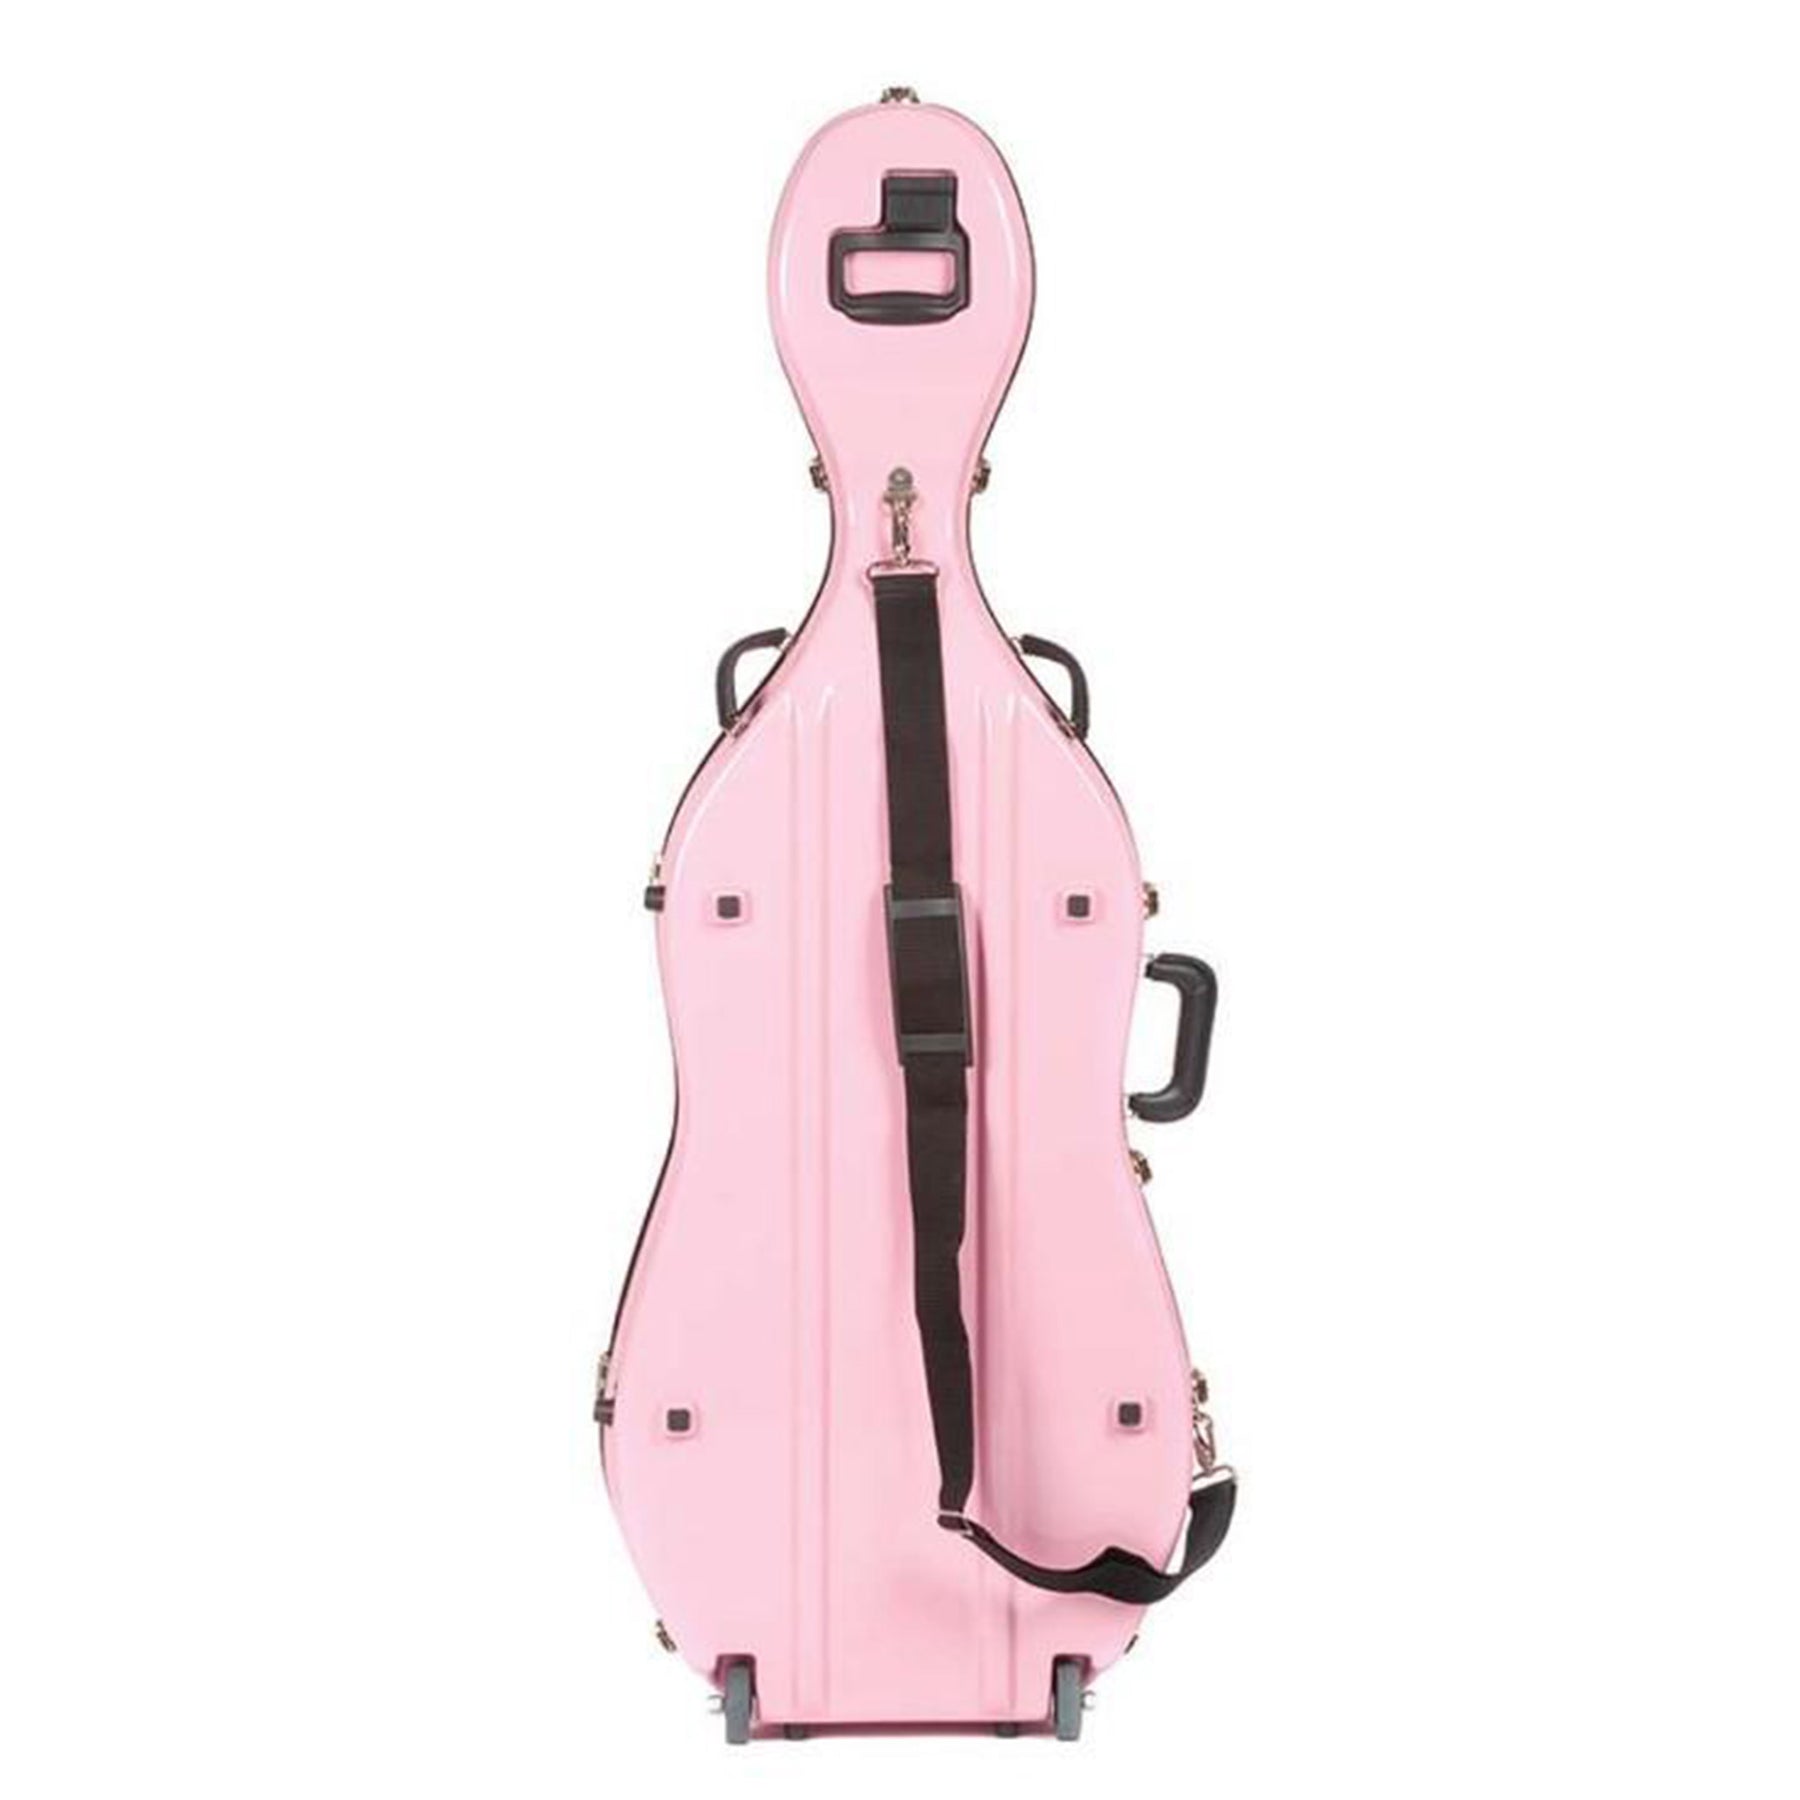 Bobelock 2000 Fiberglass Suspension Cello Case with Wheels